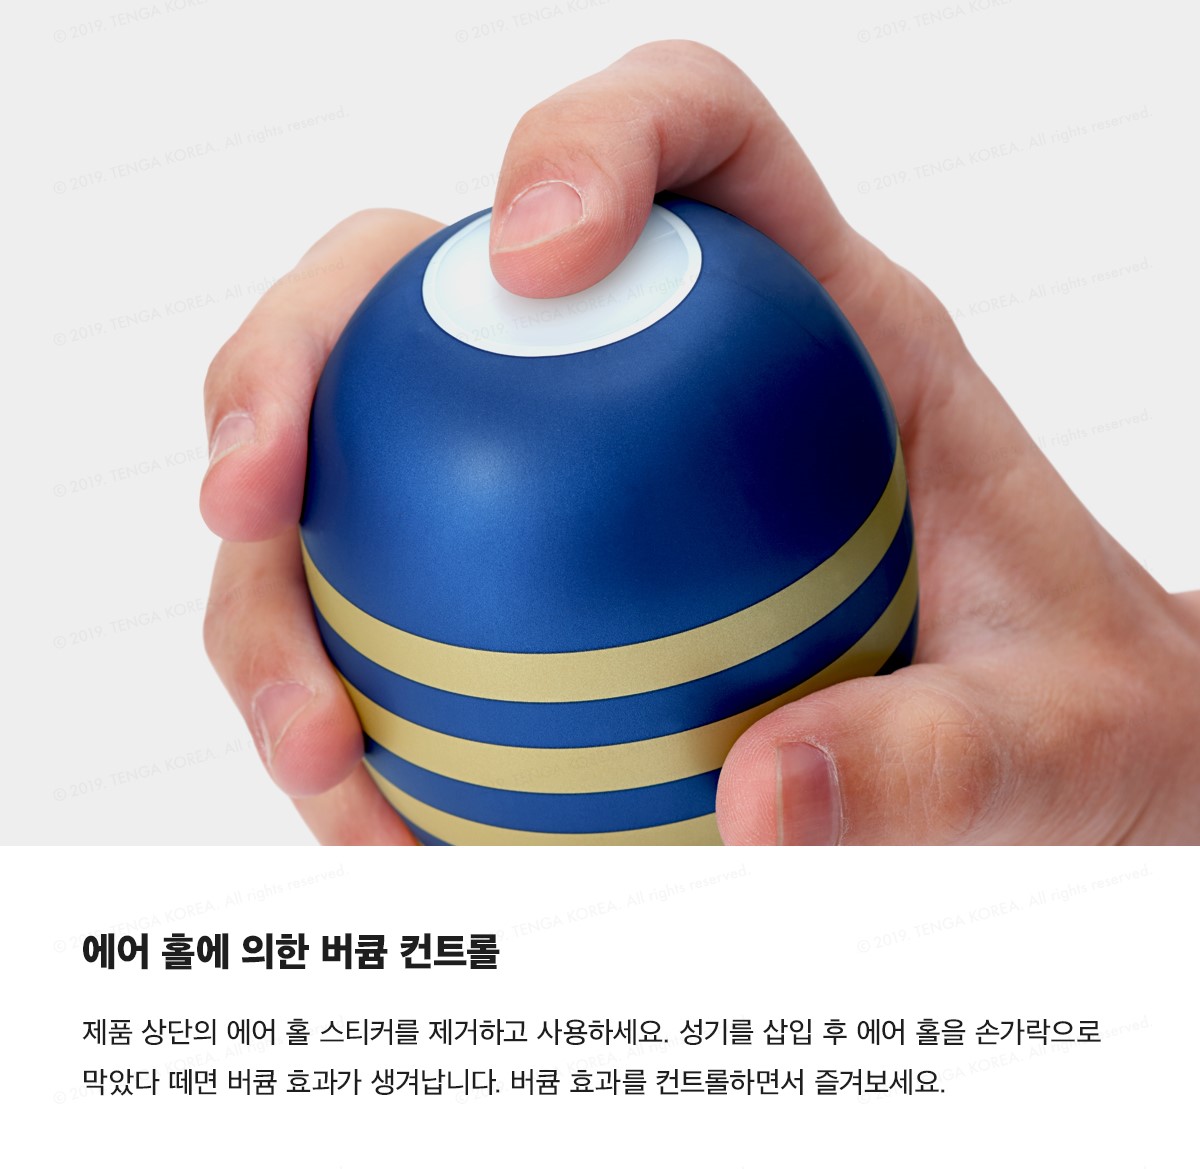 프리미엄 텐가 오리지널 버큠 컵 스트롱 PREMIUM TENGA ORIGINAL VACUUM CUP STRONG